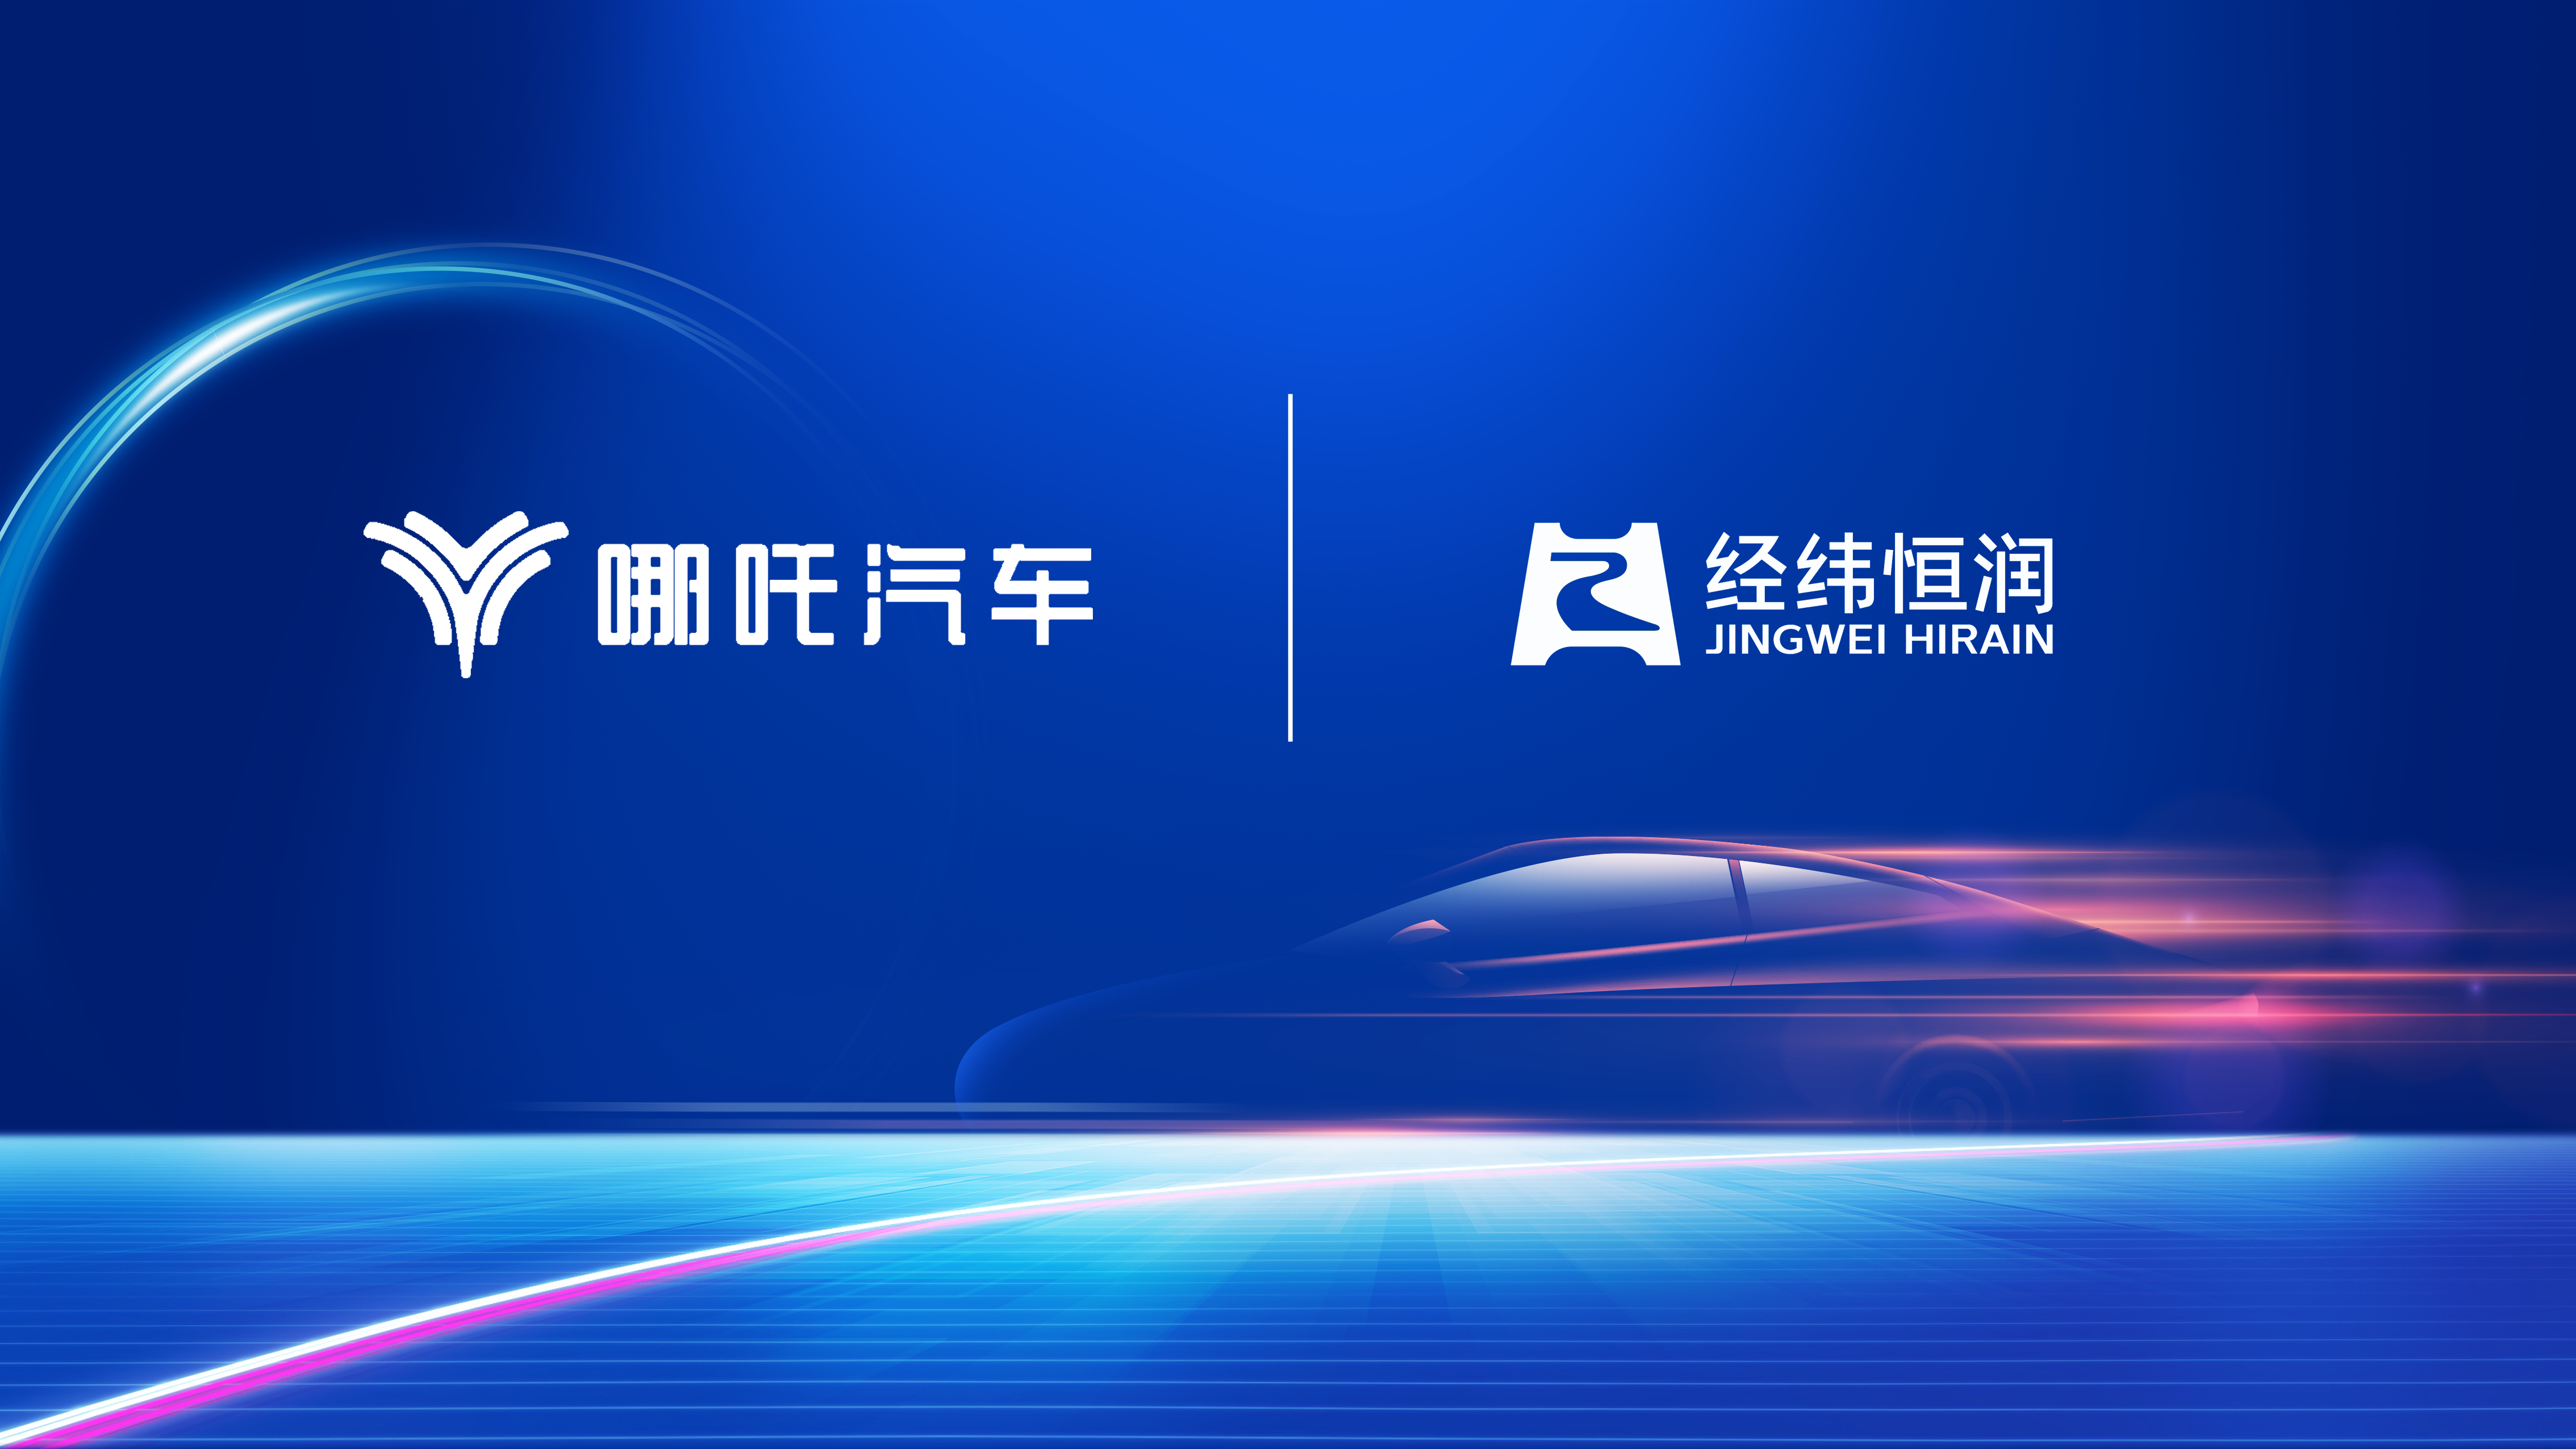 经纬F88体育
与哪吒汽车达成全面战略合作，助力中国新能源汽车走向世界之巅